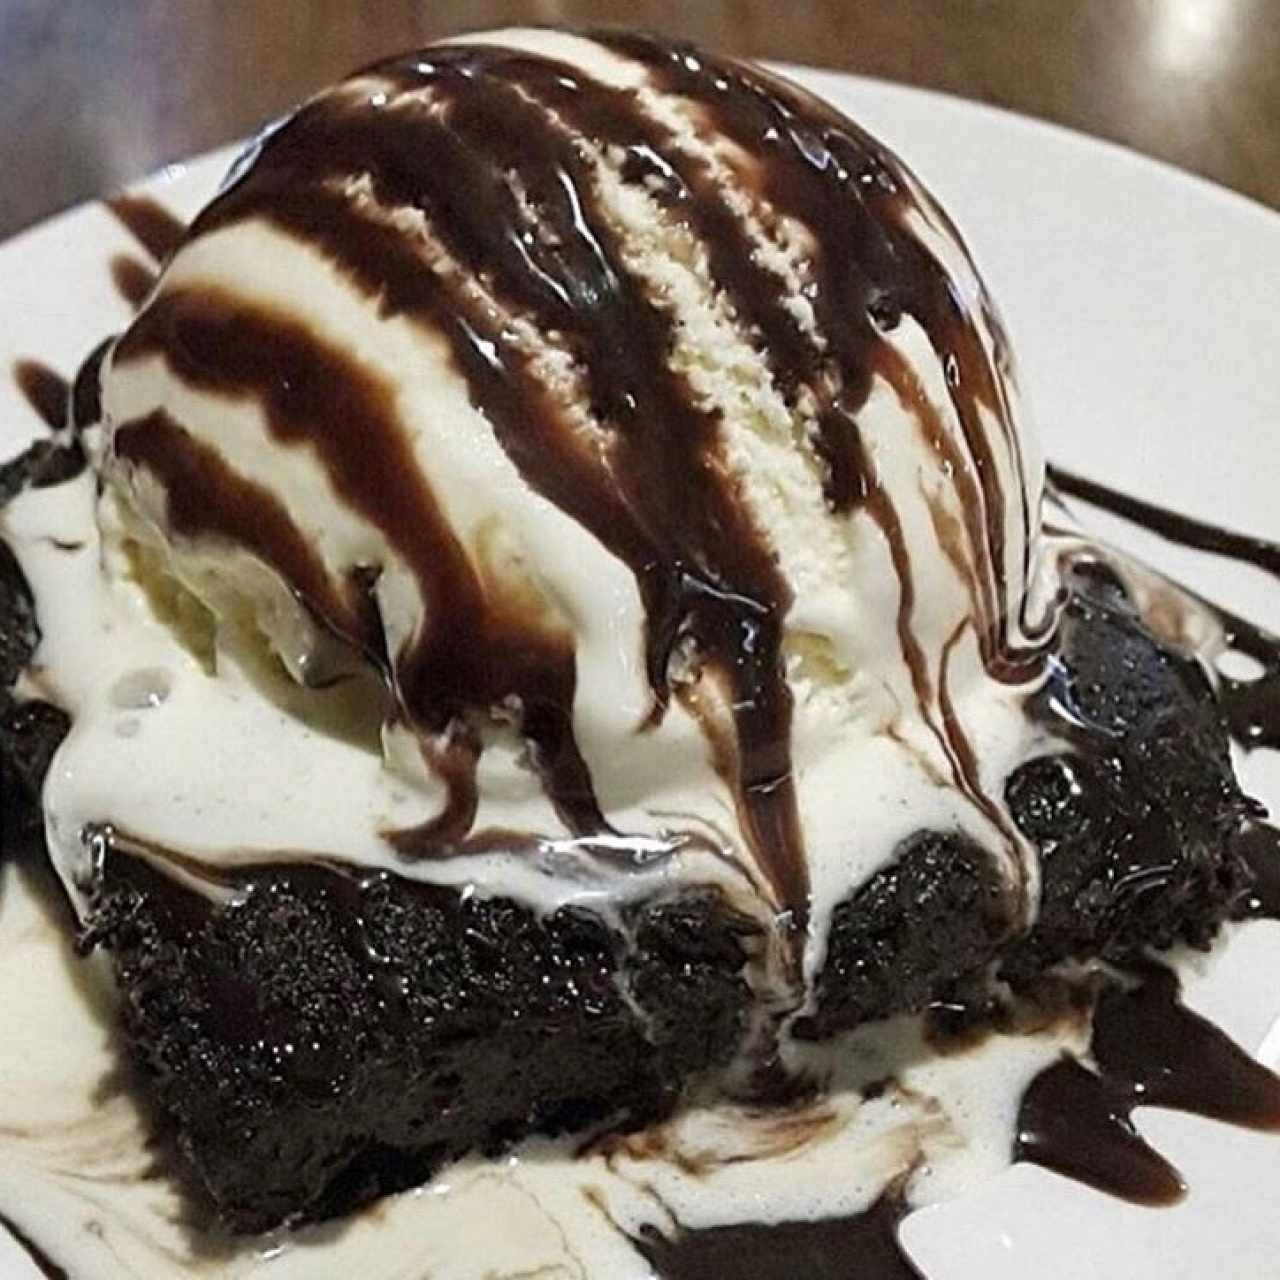 brownie con helado!